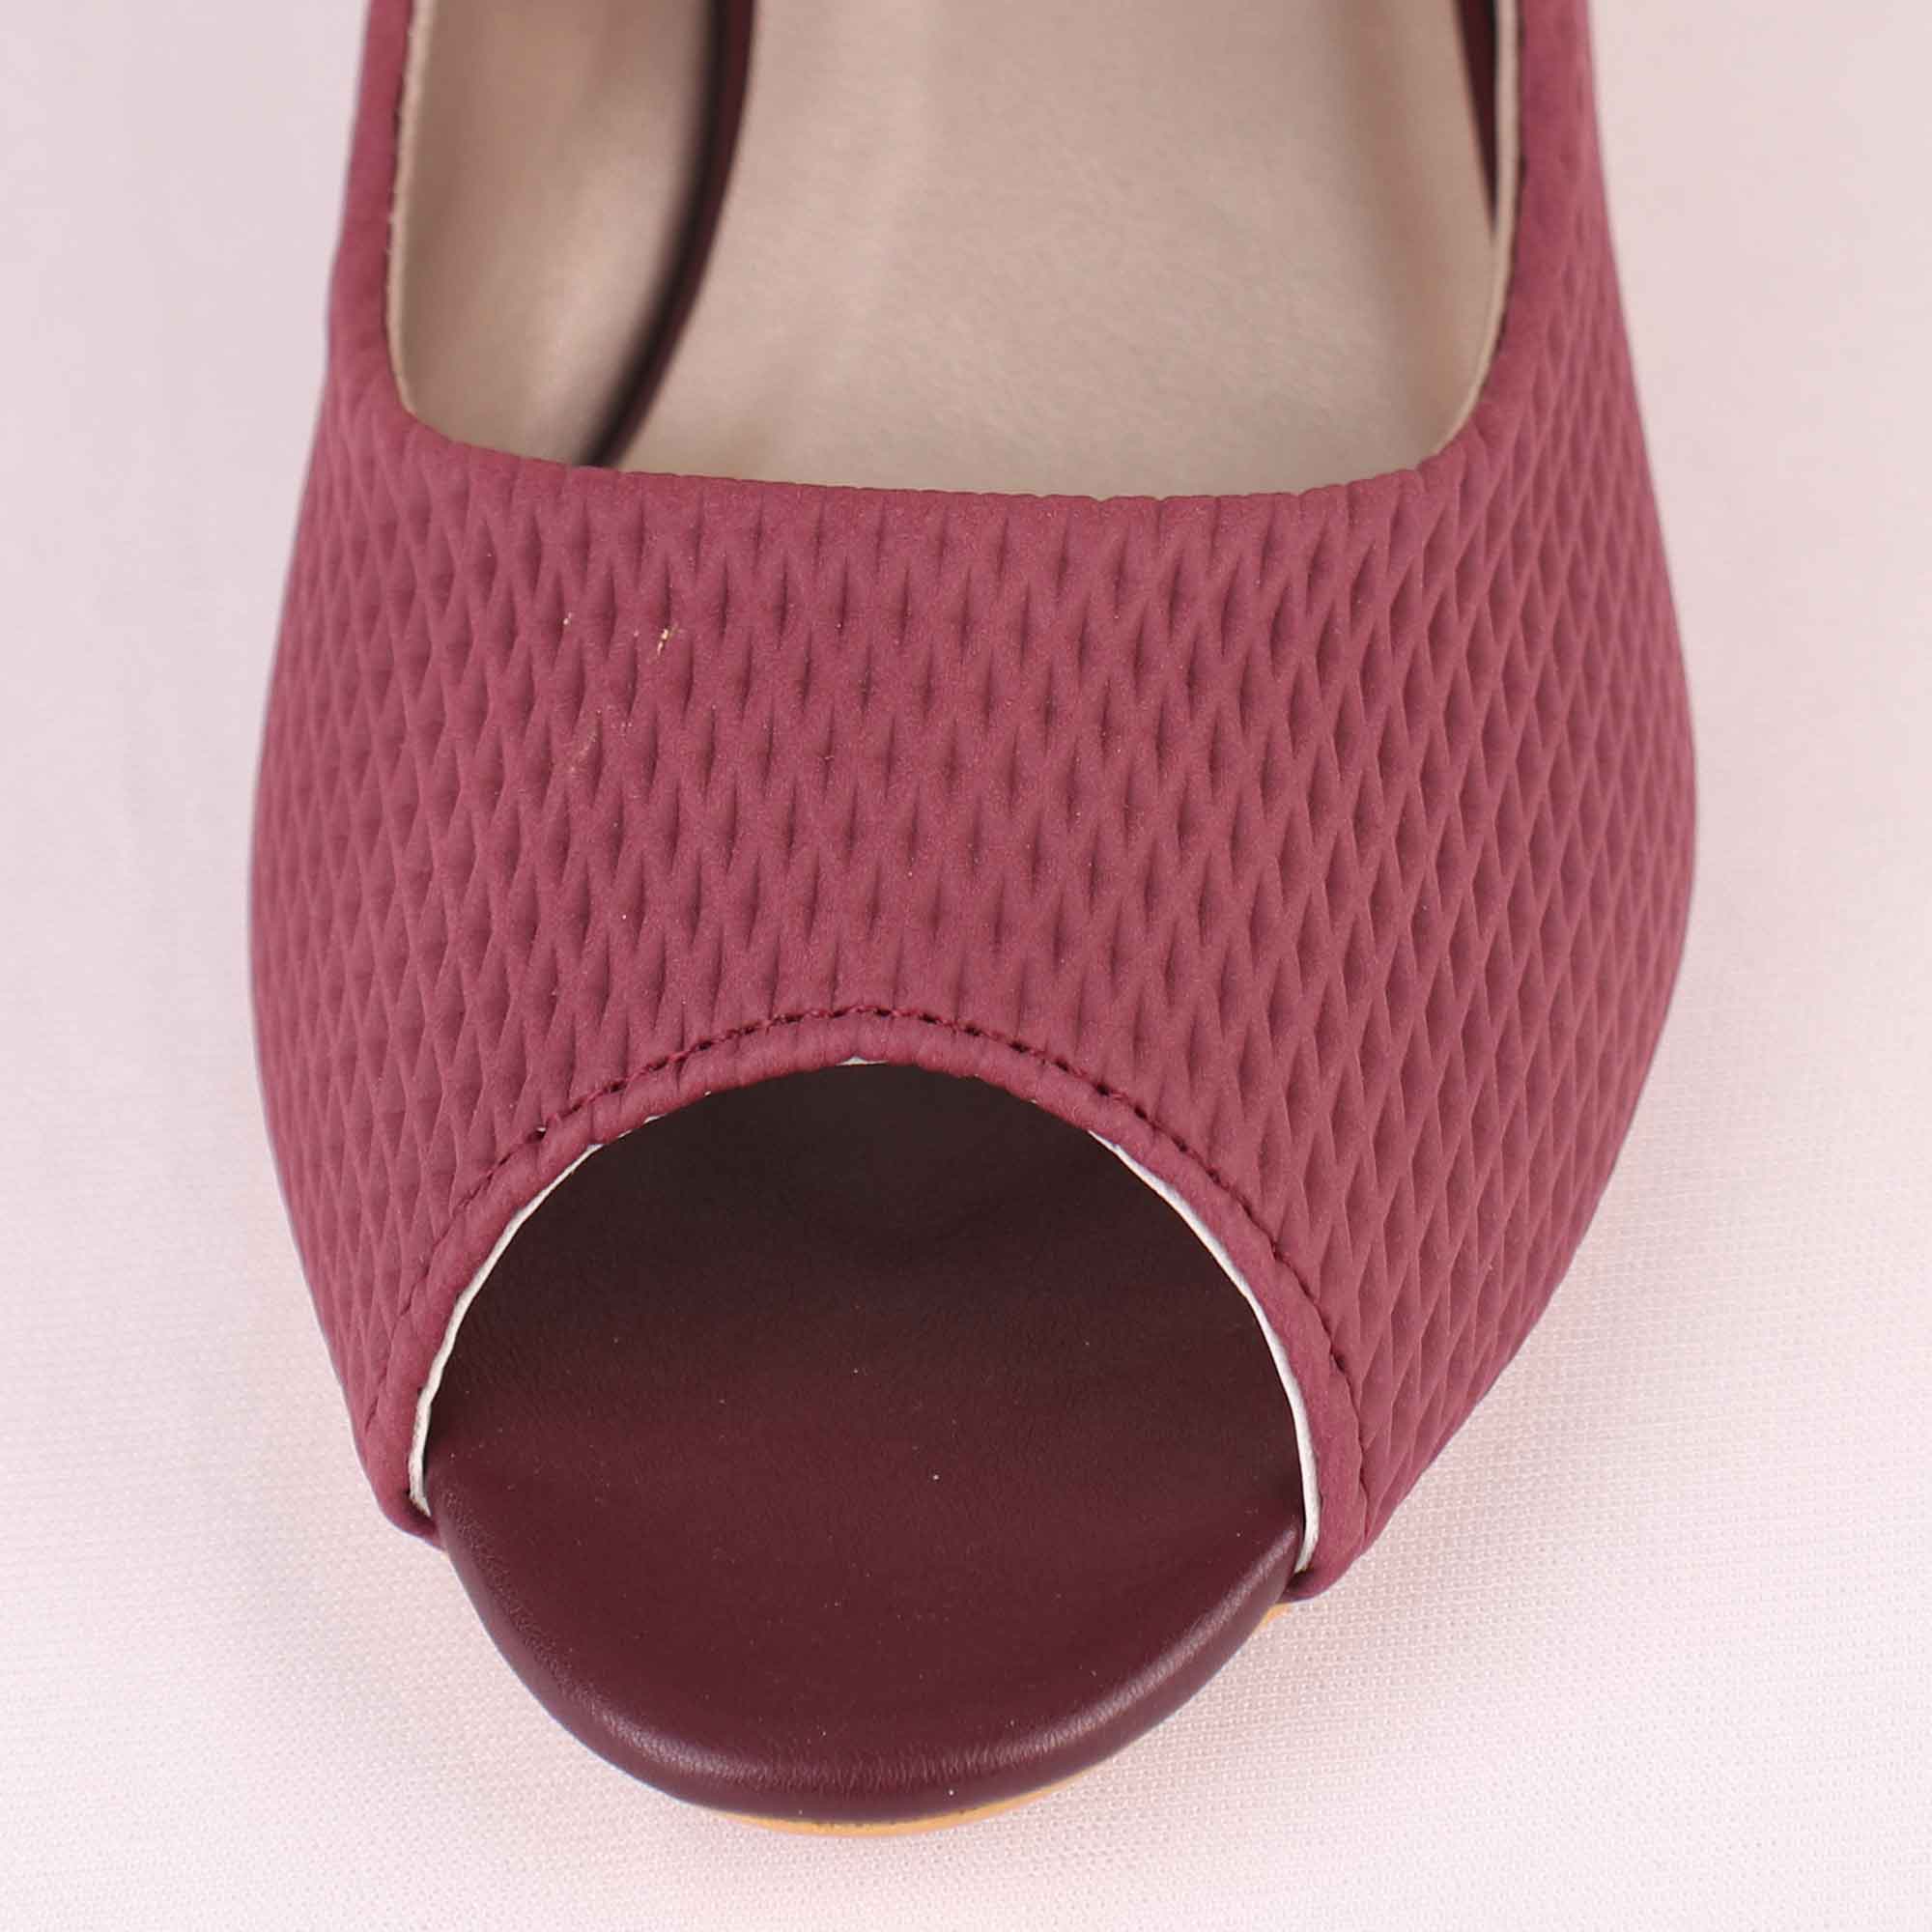 Myntra footwear haul/Try on Haul/flats block heels bellies/partywear  footwear - YouTube